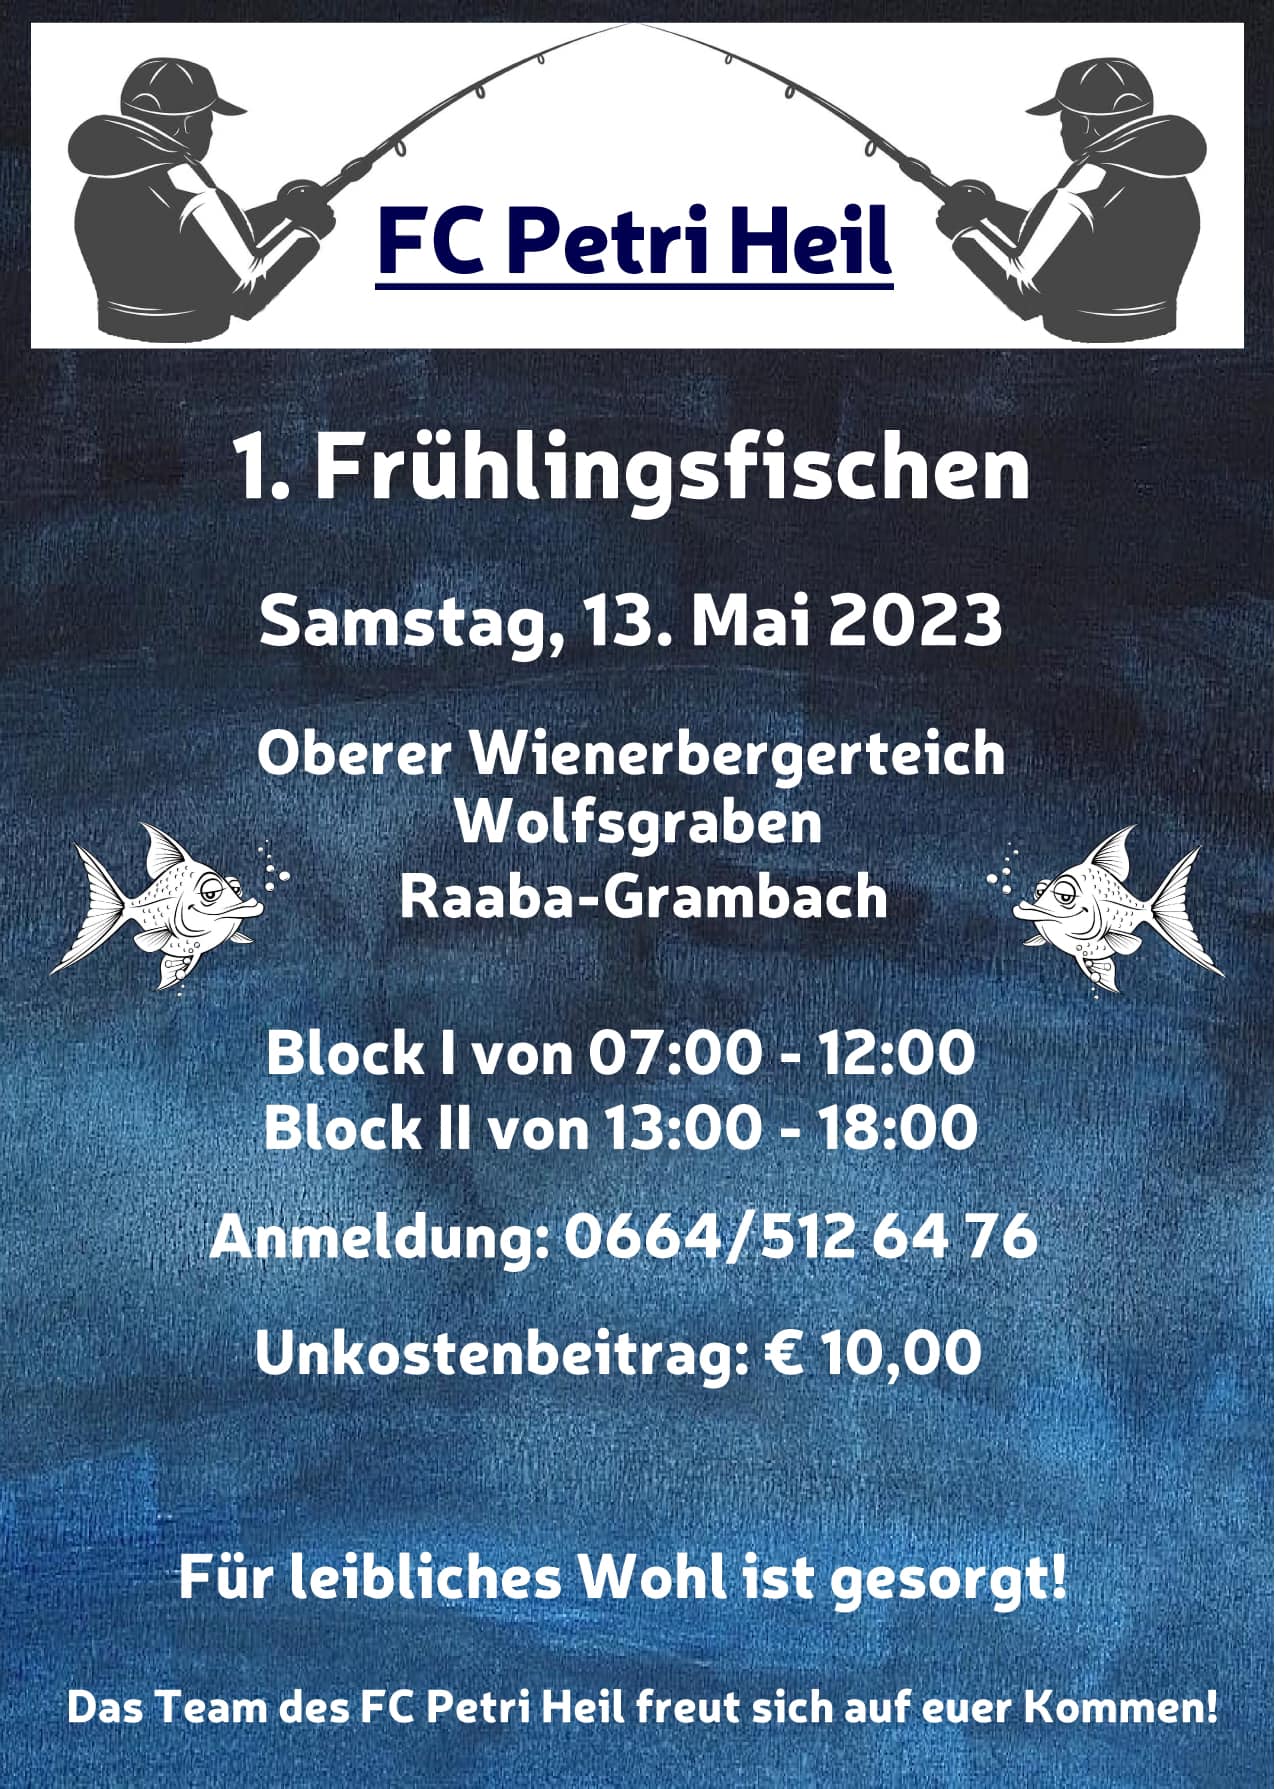 1. Frühlingsfischen des FC Petri Heil in Raaba-Grambach